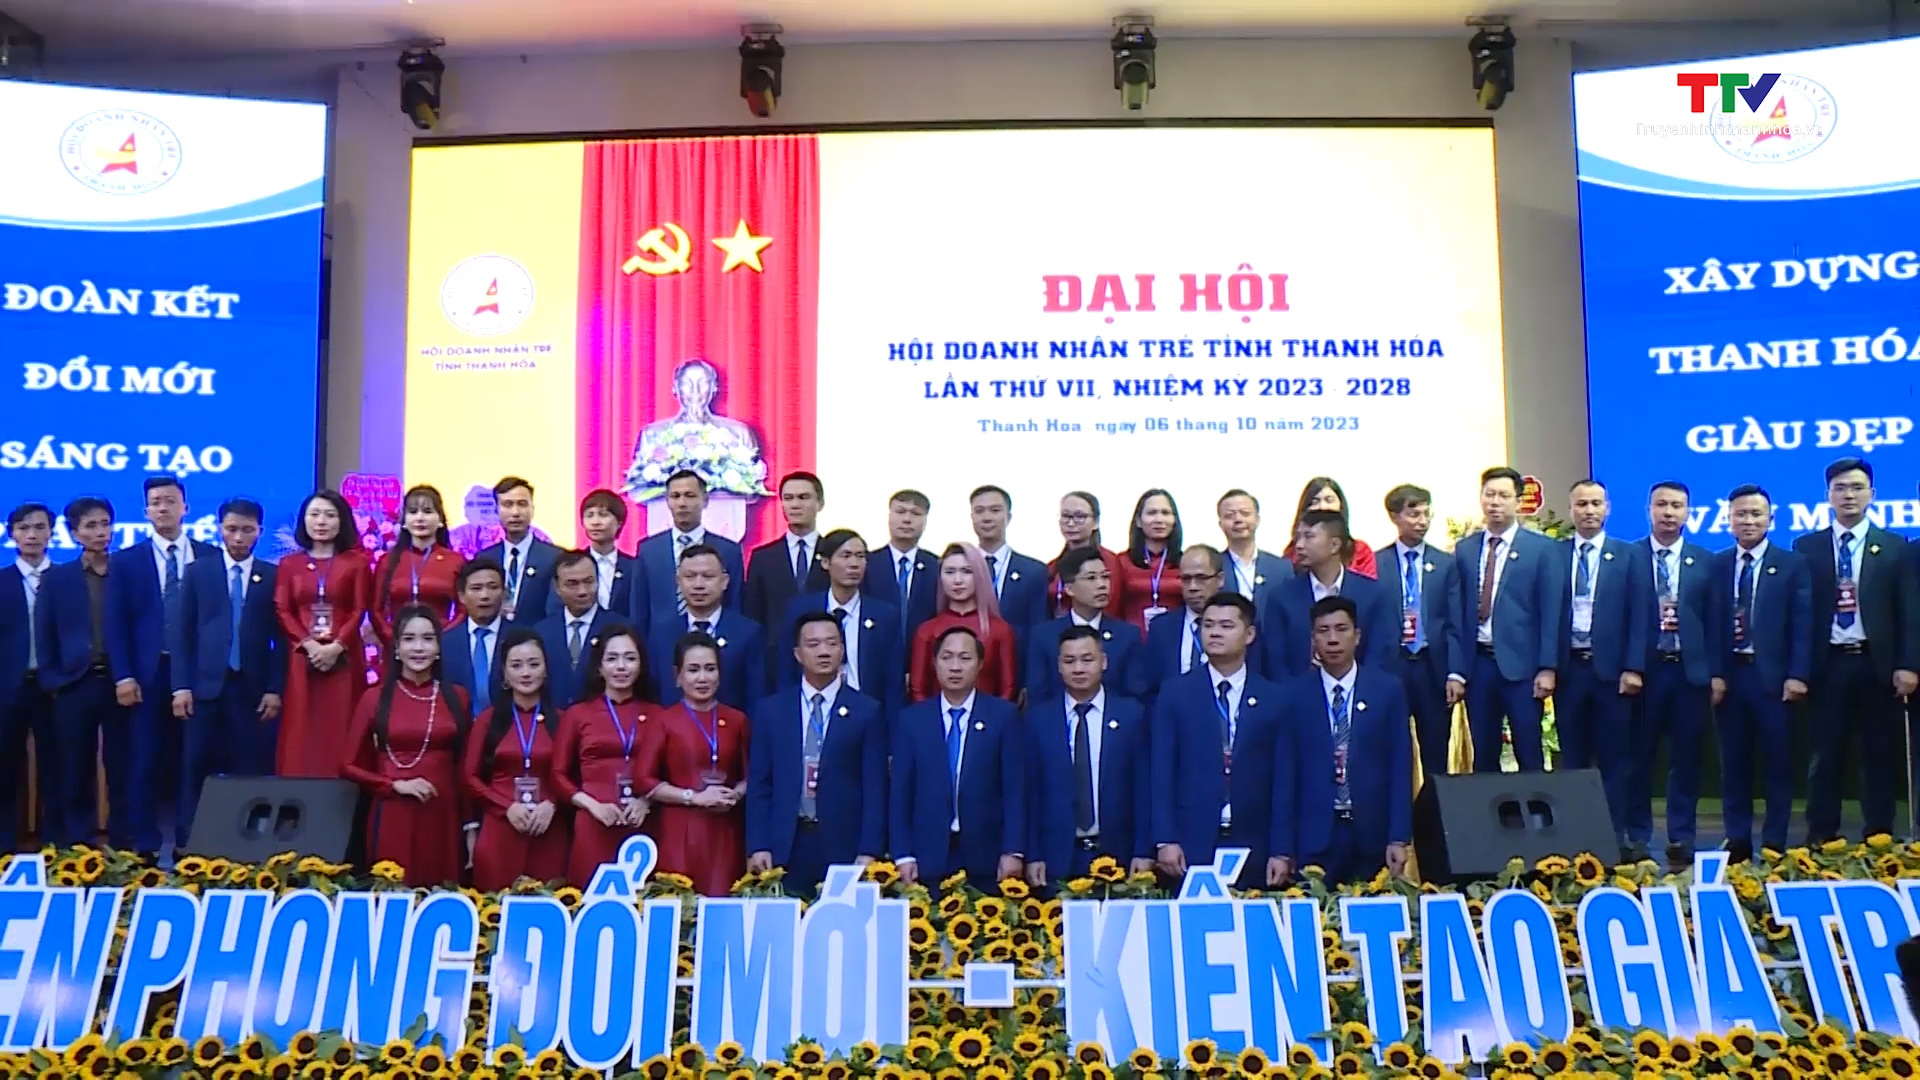 Đại hội Hội Doanh nhân trẻ tỉnh Thanh Hoá nhiệm kỳ 2023 - 2028 - Ảnh 5.